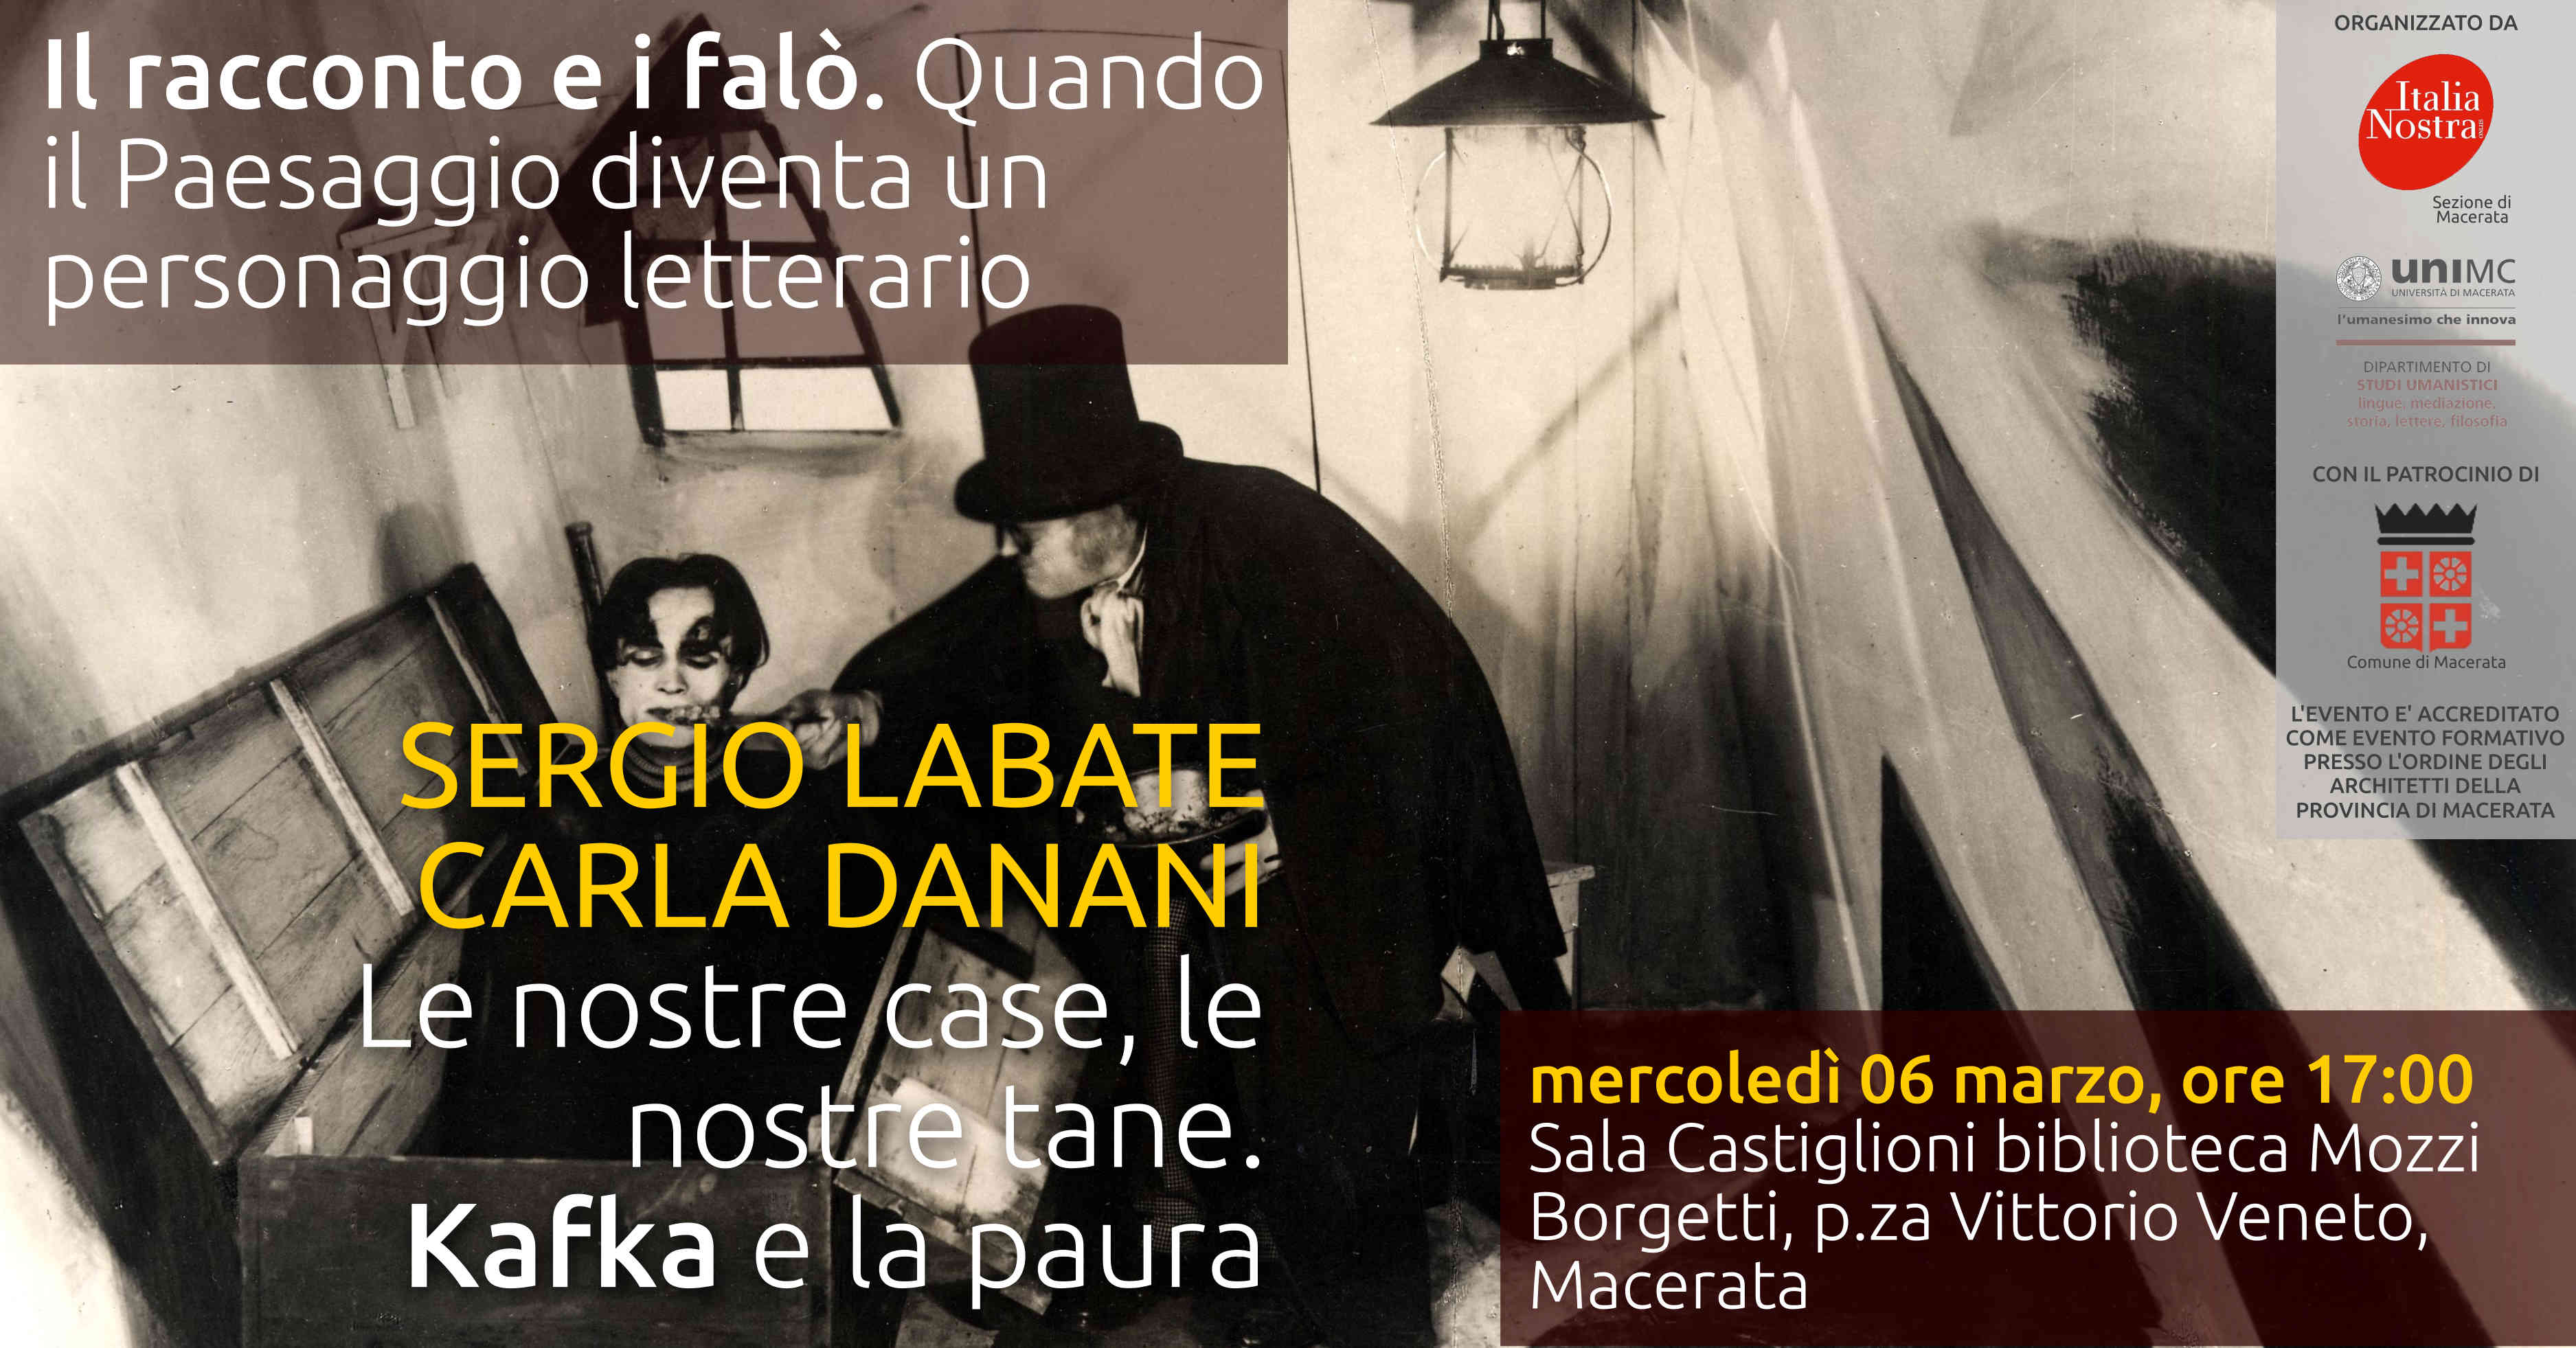 Macerata, “Il racconto e i falò” con Sergio Labate e Carla Danani